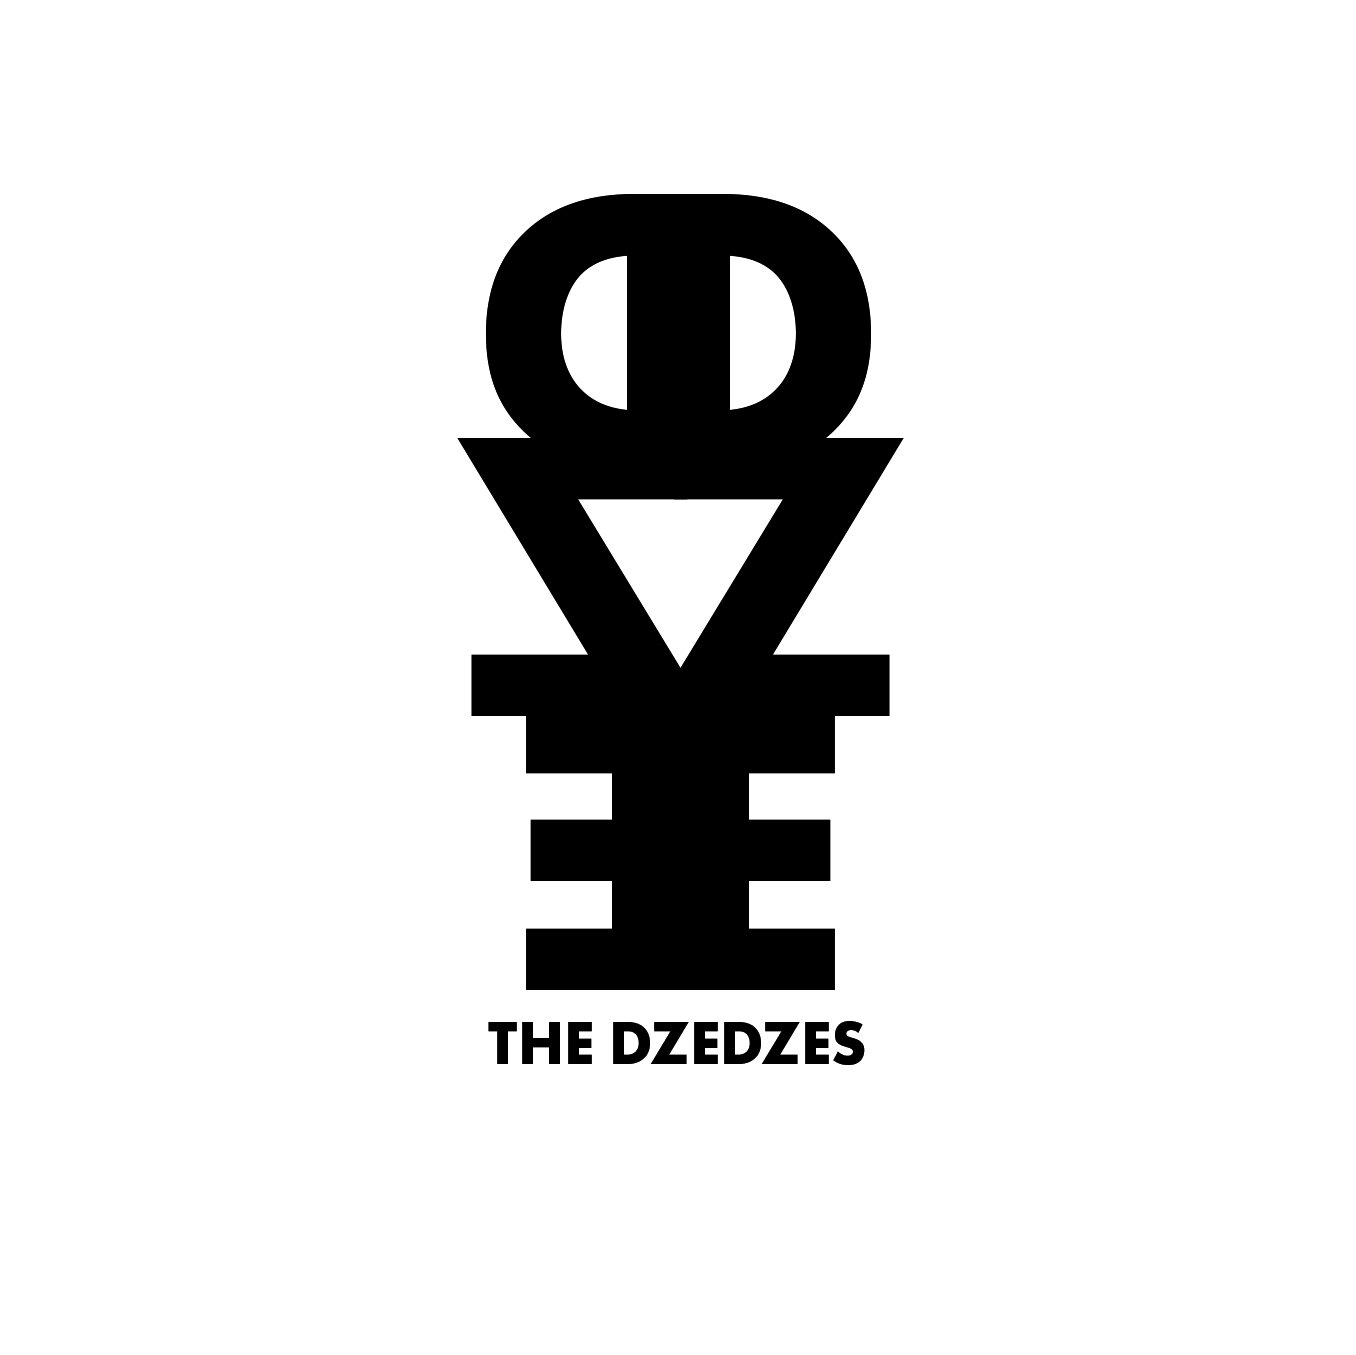 The Dzedzes